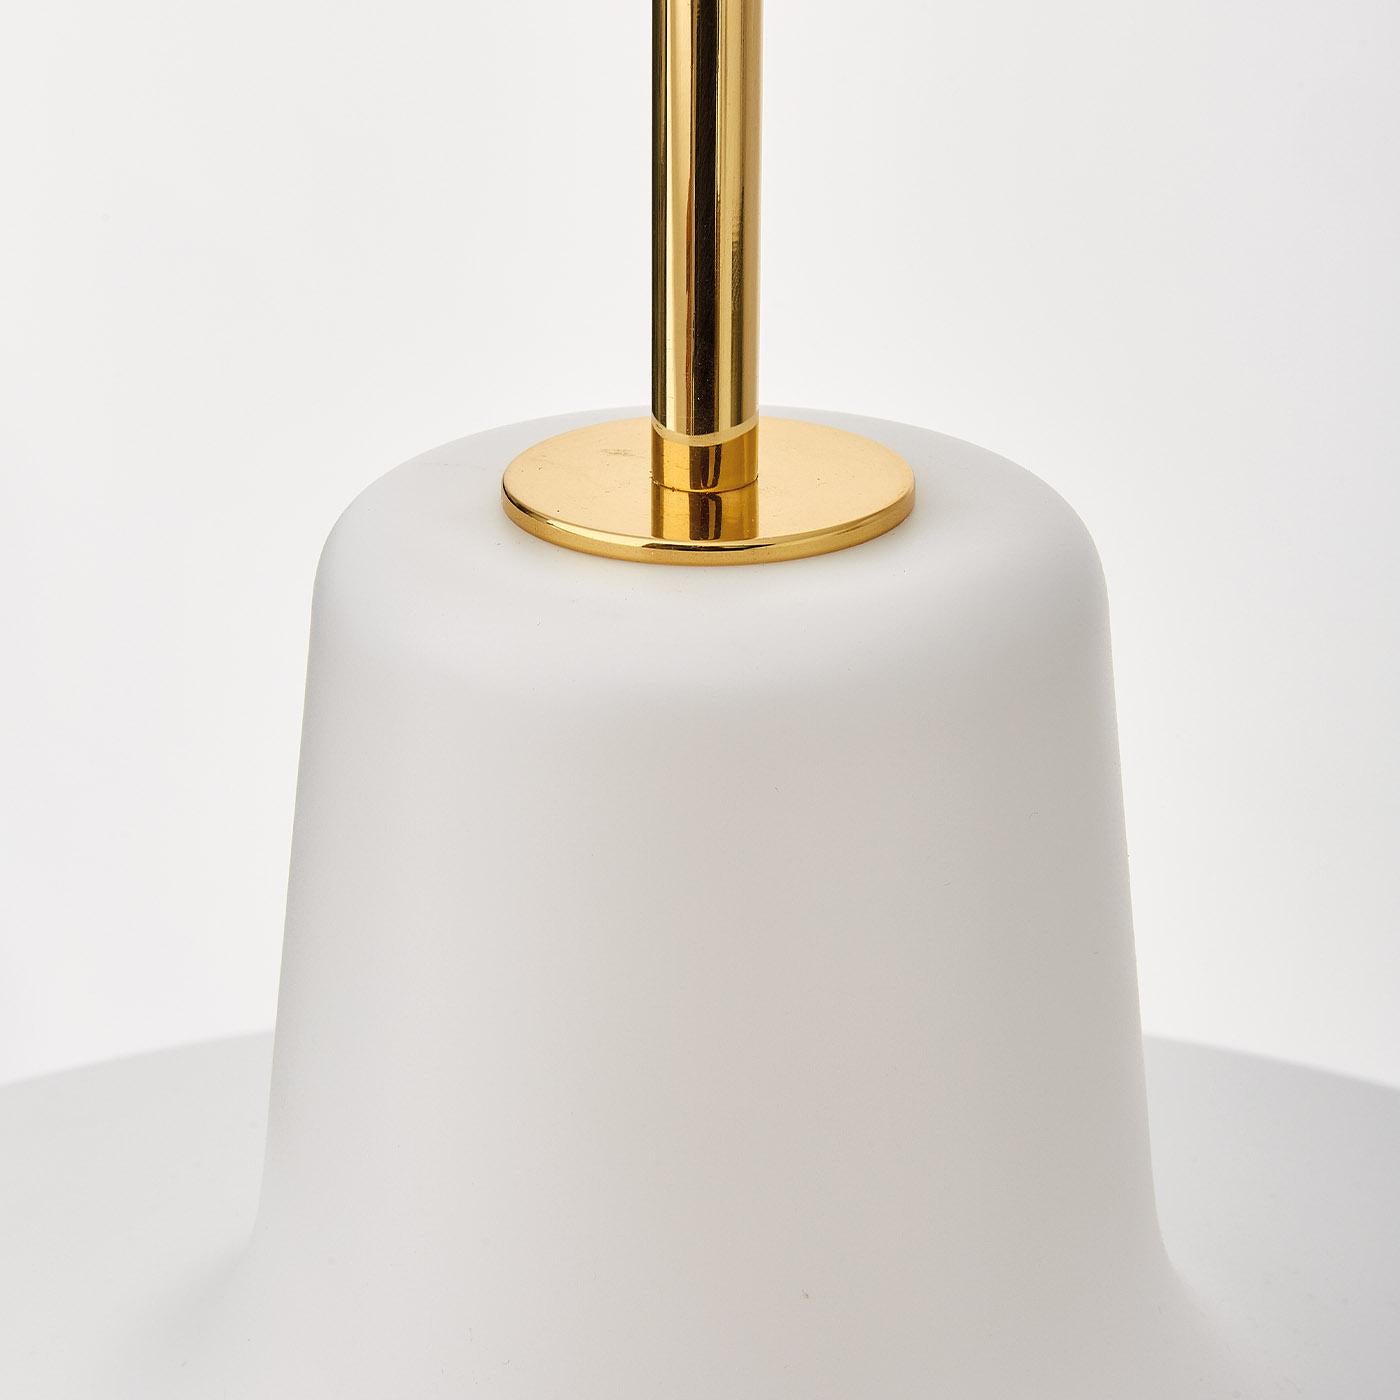 Un design iconique créé en 1958 par Ignazio Gardella pour les librairies Edizioni Paoline, cette lampe suspendue présente une forme légère et simple, réalisée en polycarbonate laqué blanc satiné et des détails en laiton poli.